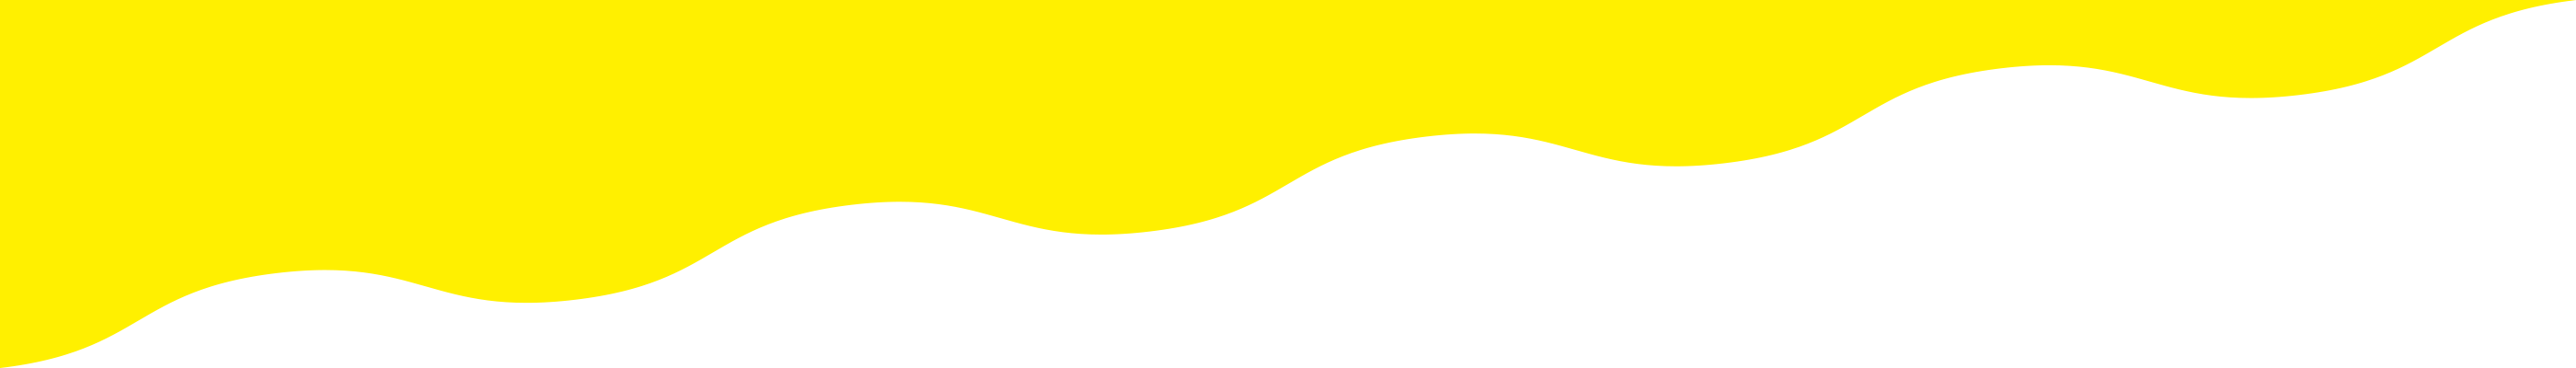 yellow01